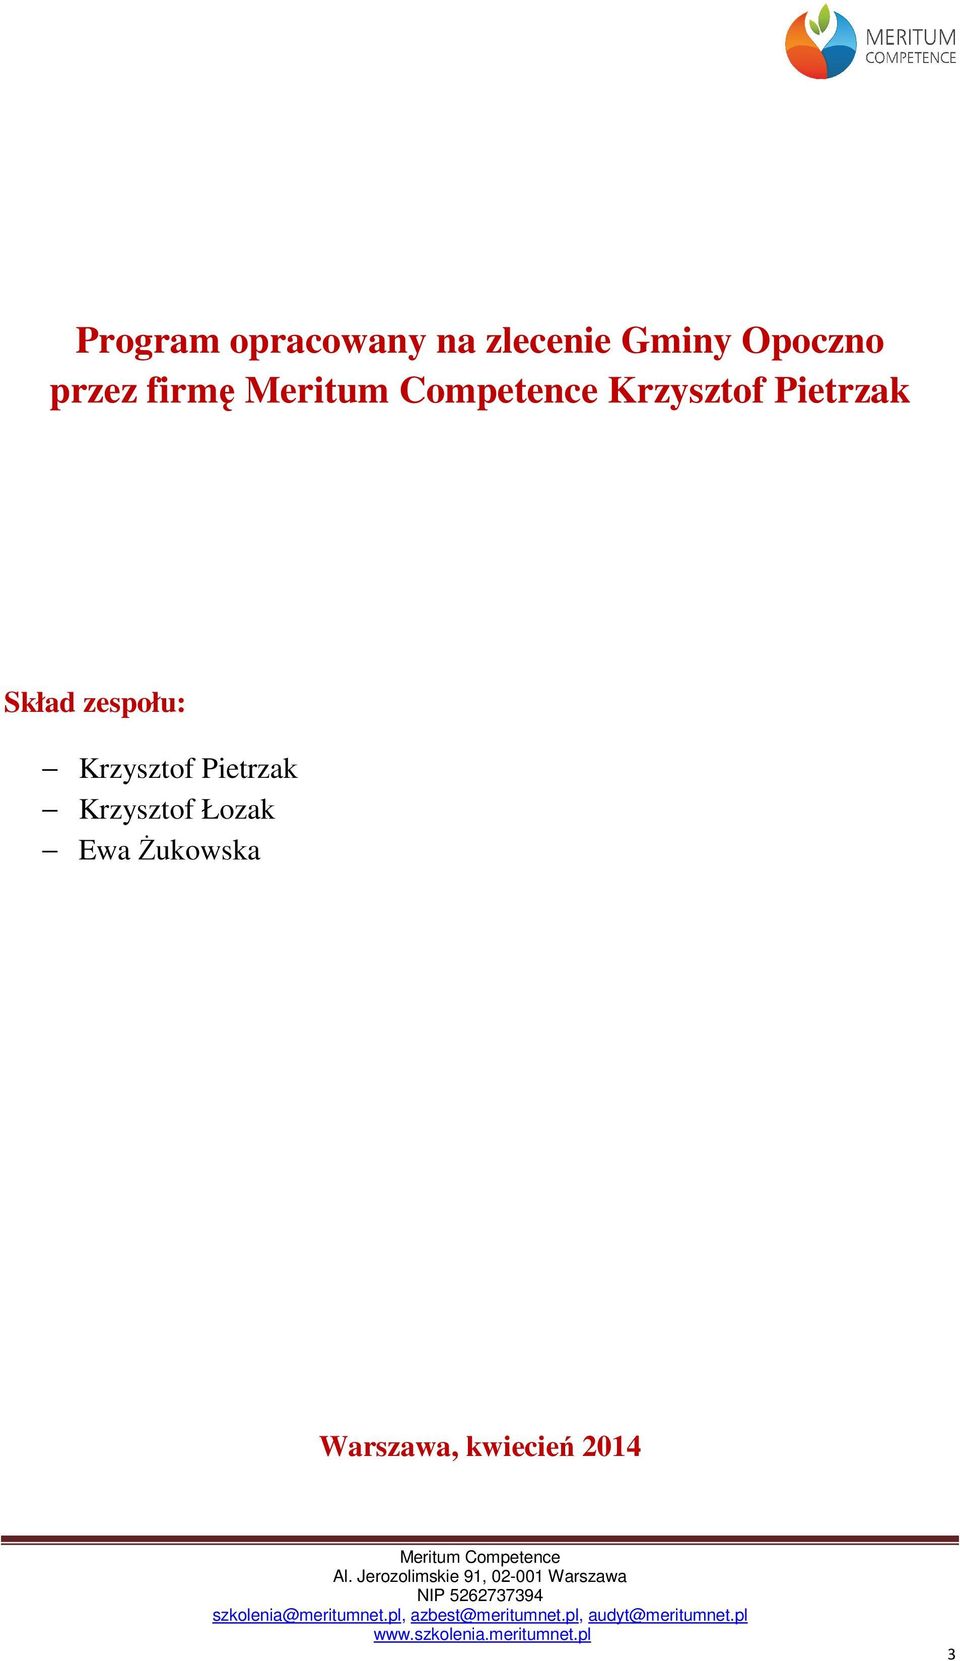 Skład zespołu: Krzysztof Pietrzak